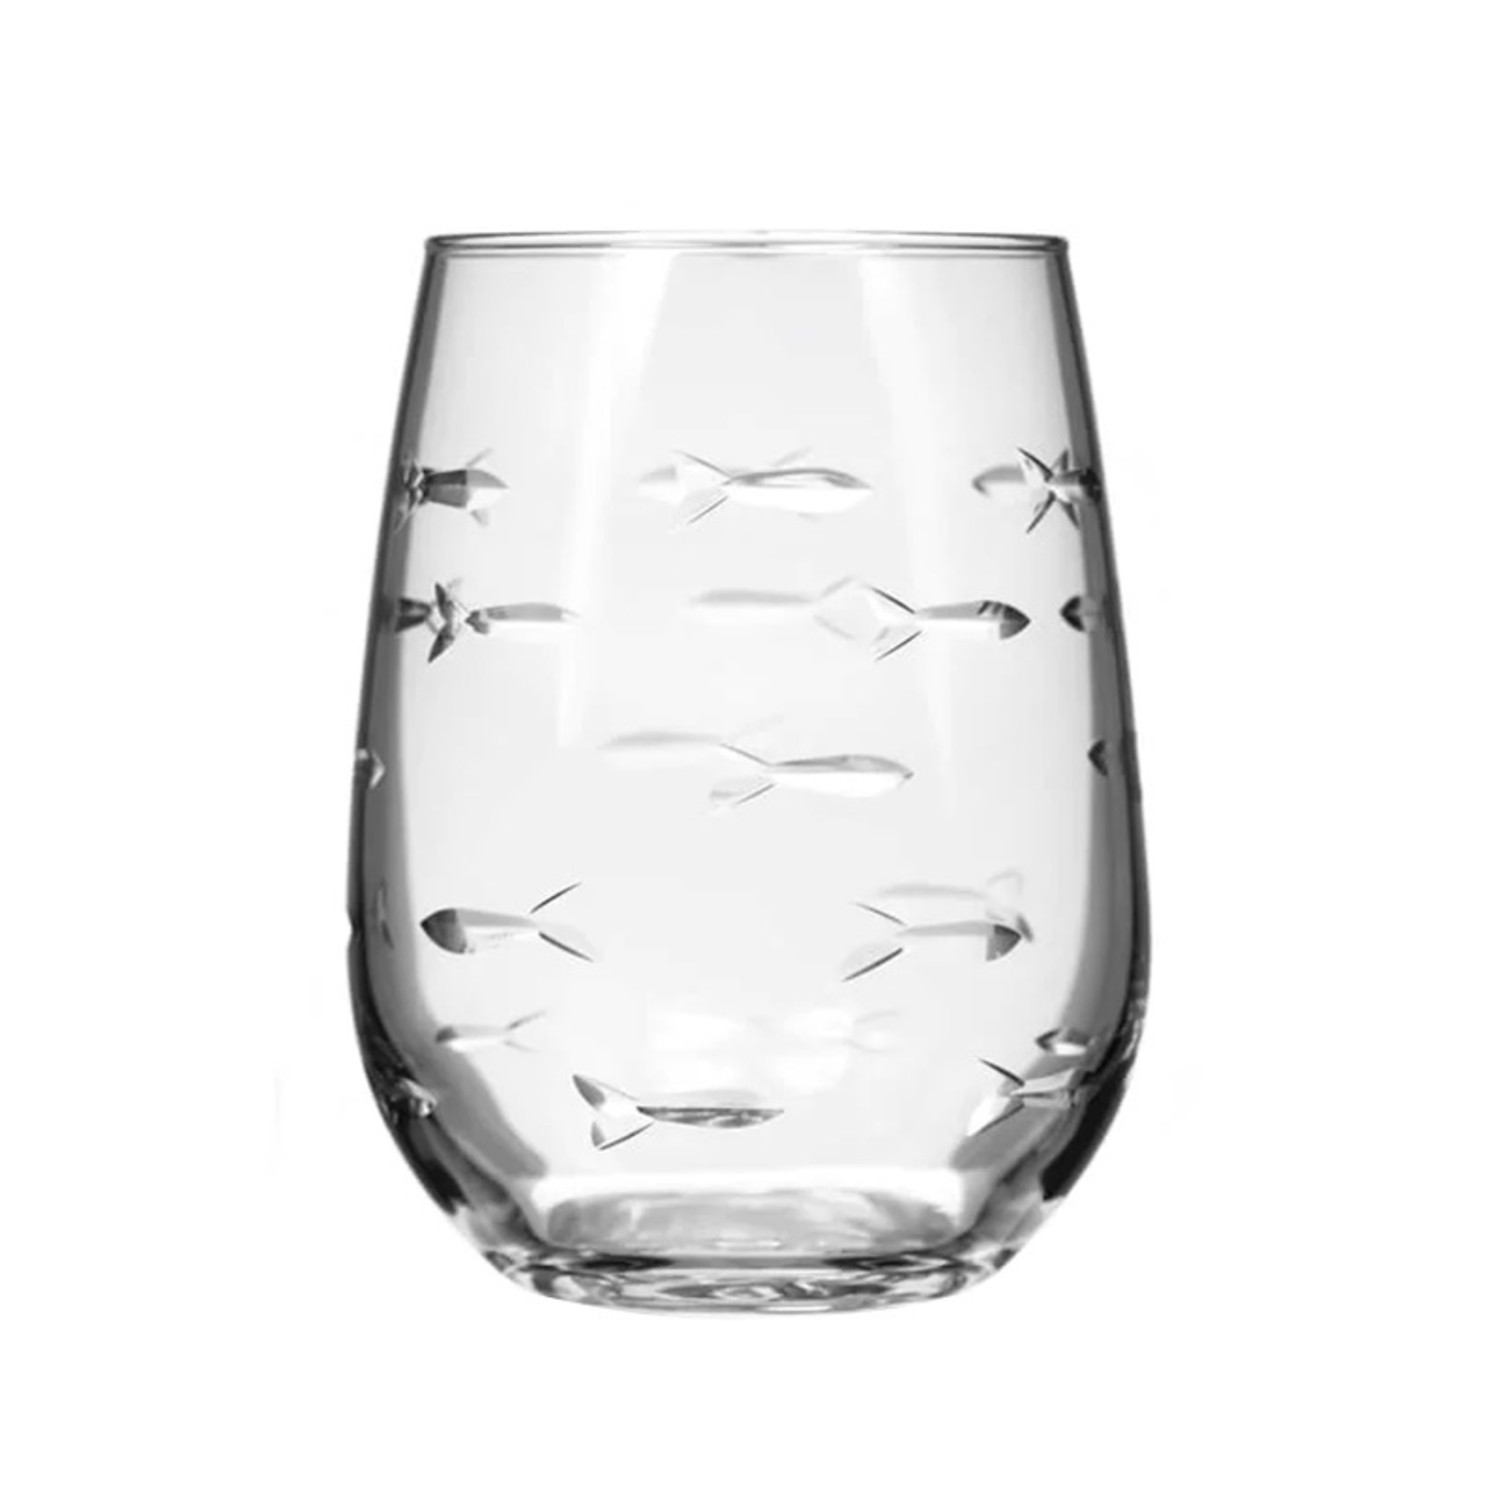 https://cdn.shoplightspeed.com/shops/662163/files/51885560/1500x4000x3/etched-stemless-wine-glass.jpg